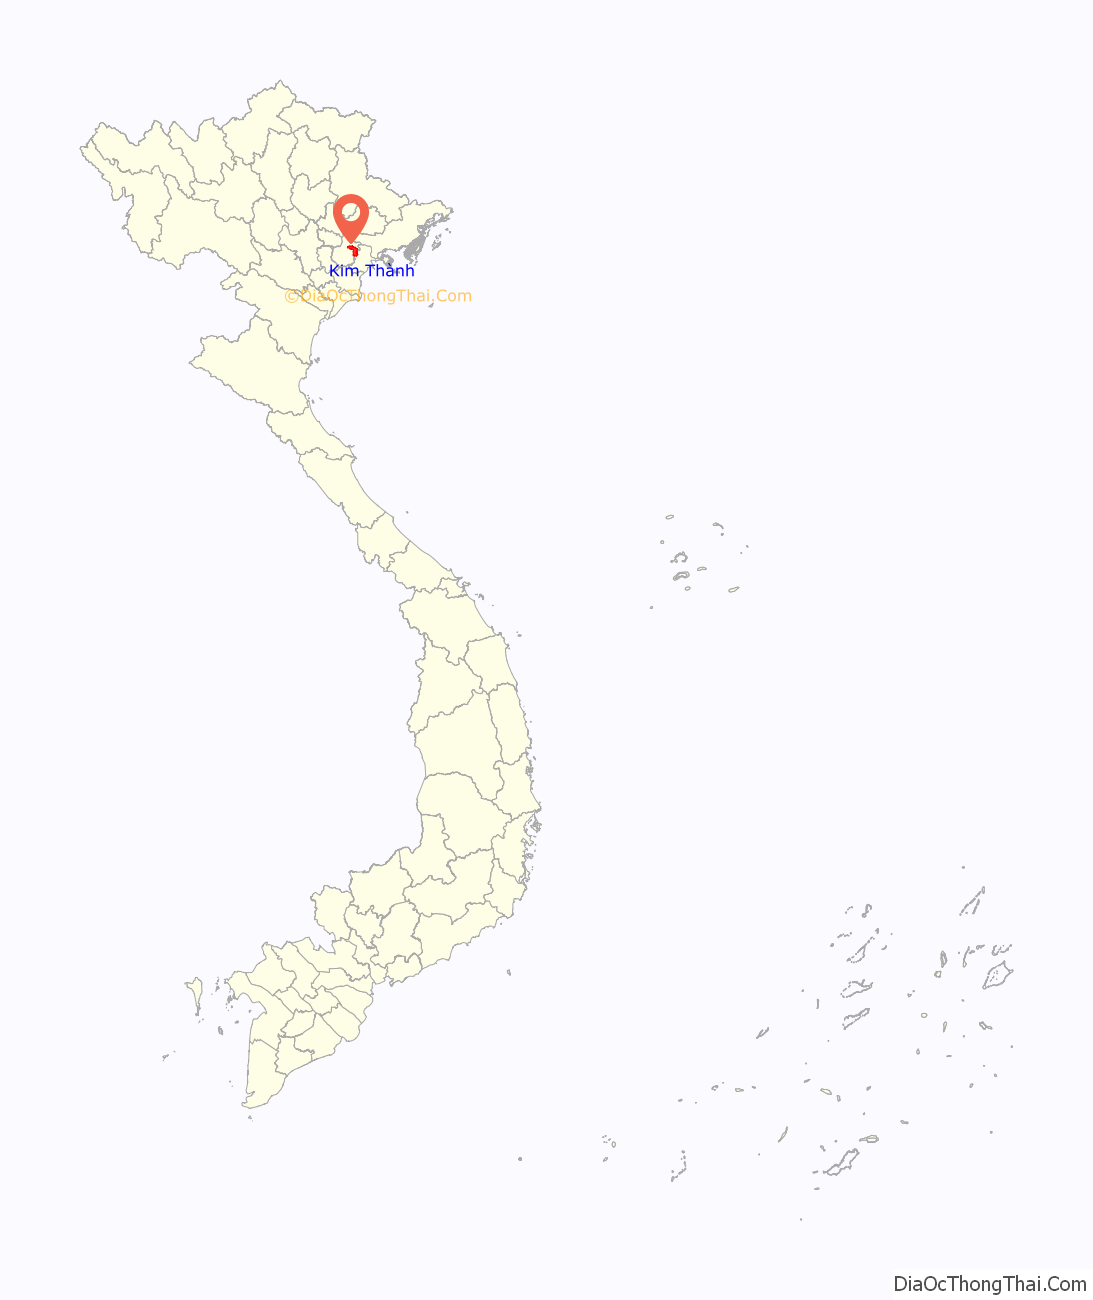 Huyện Kim Thành ở đâu? Vị trí của huyện Kim Thành